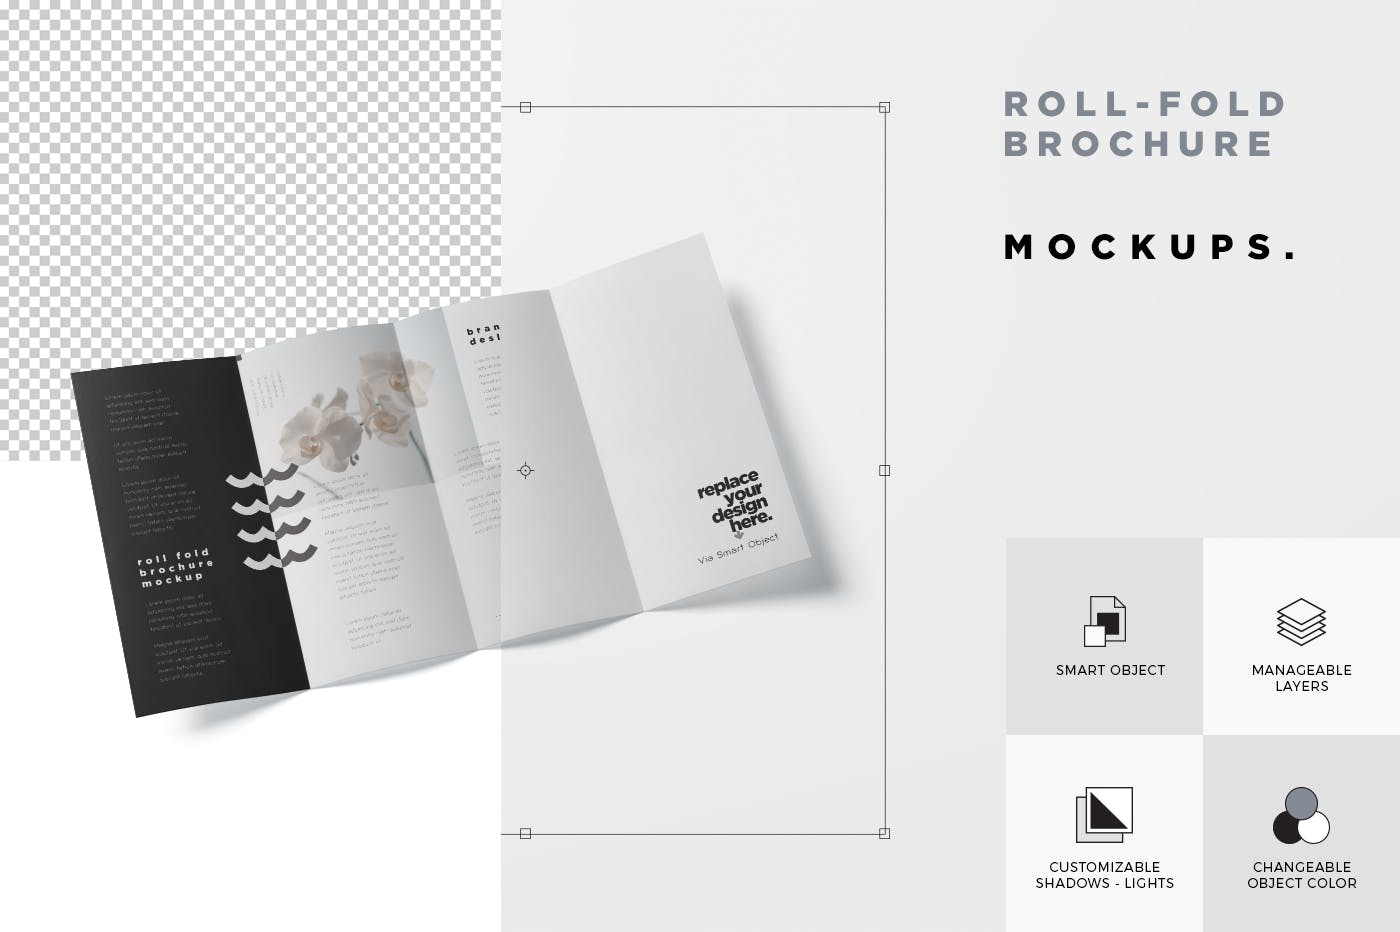 折叠设计风格企业传单/宣传册设计样机第一素材精选 Roll-Fold Brochure Mockup – DL DIN Lang Size插图(6)